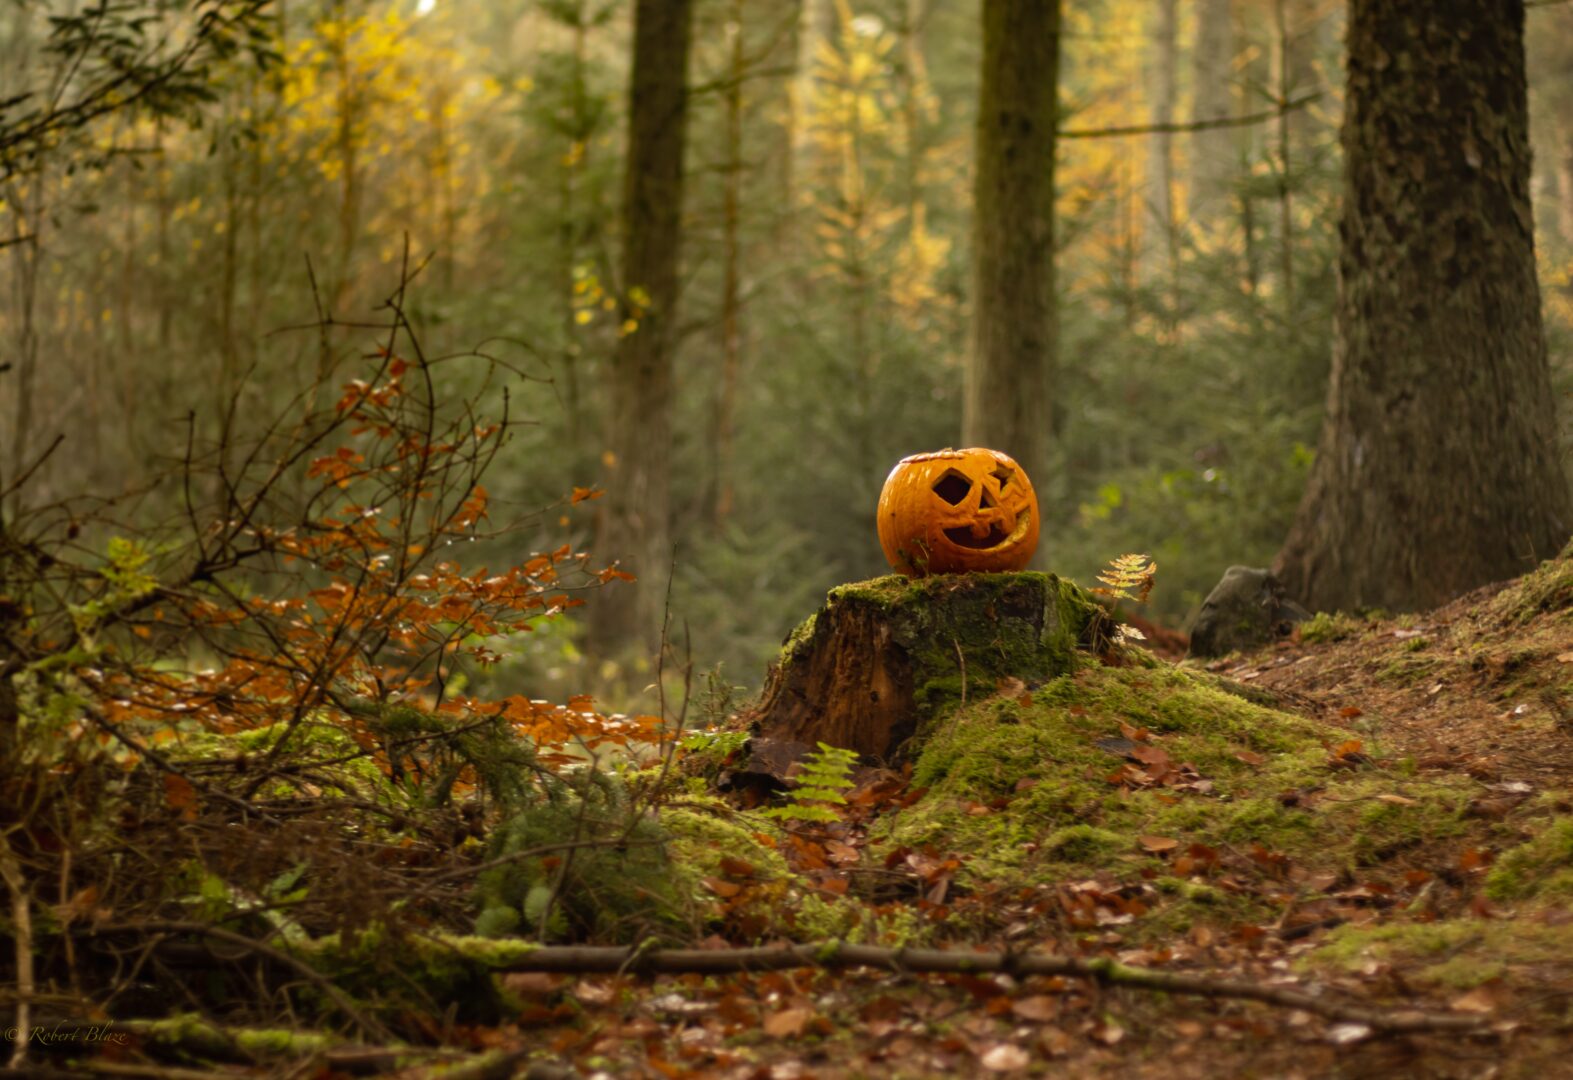 pumpkin kept in FOREST